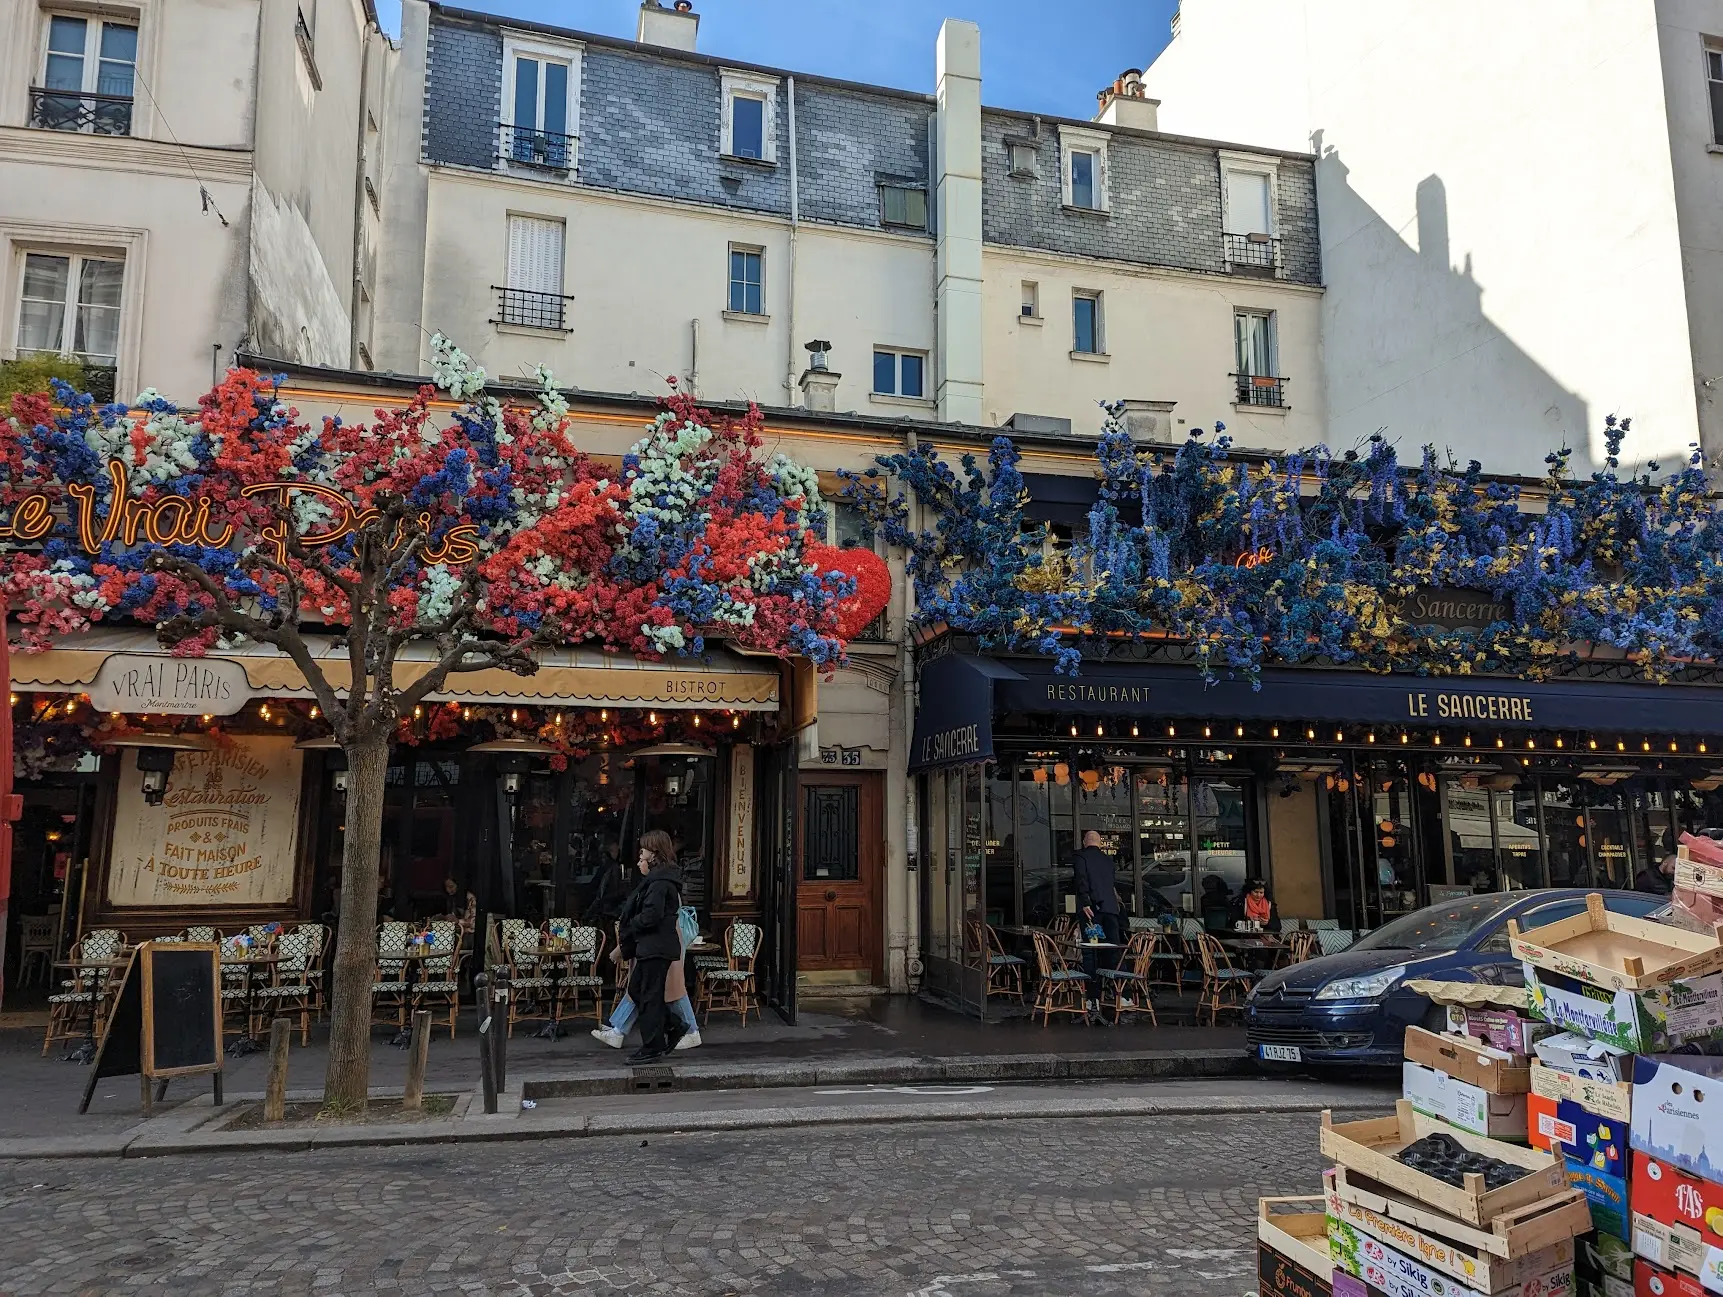 Cafe Gourmand at Le Sancerre, De Marais, Paris